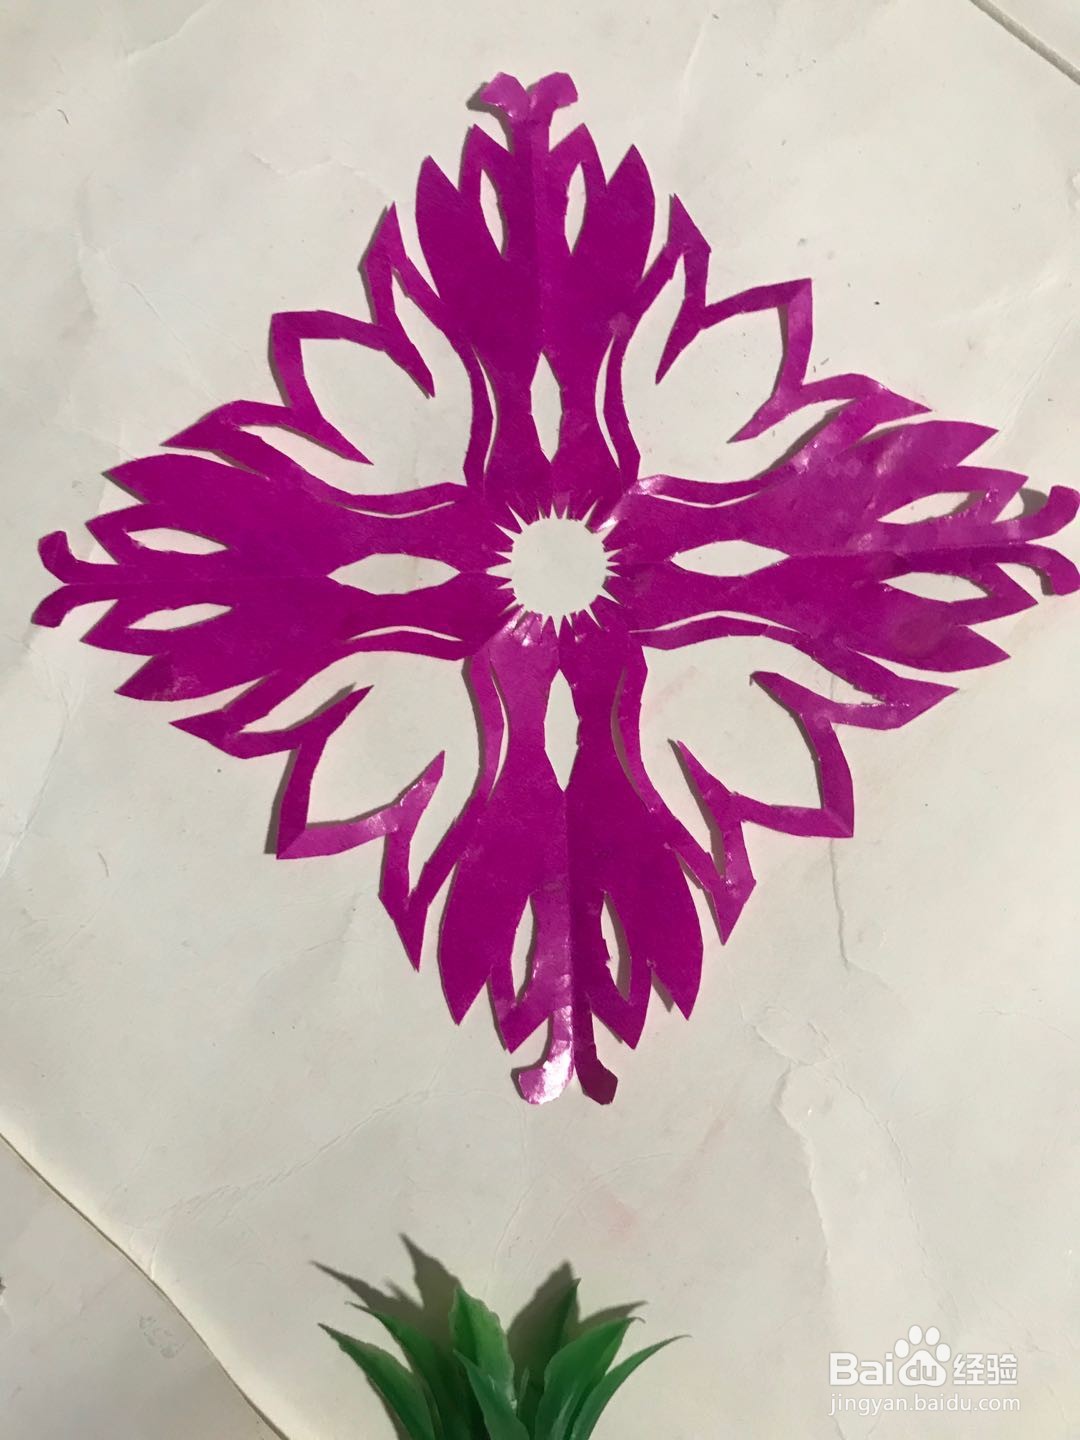 3 4 5 6 7分步阅读 幼儿园简易手工启蒙剪纸 一幅简单漂亮的小百合花